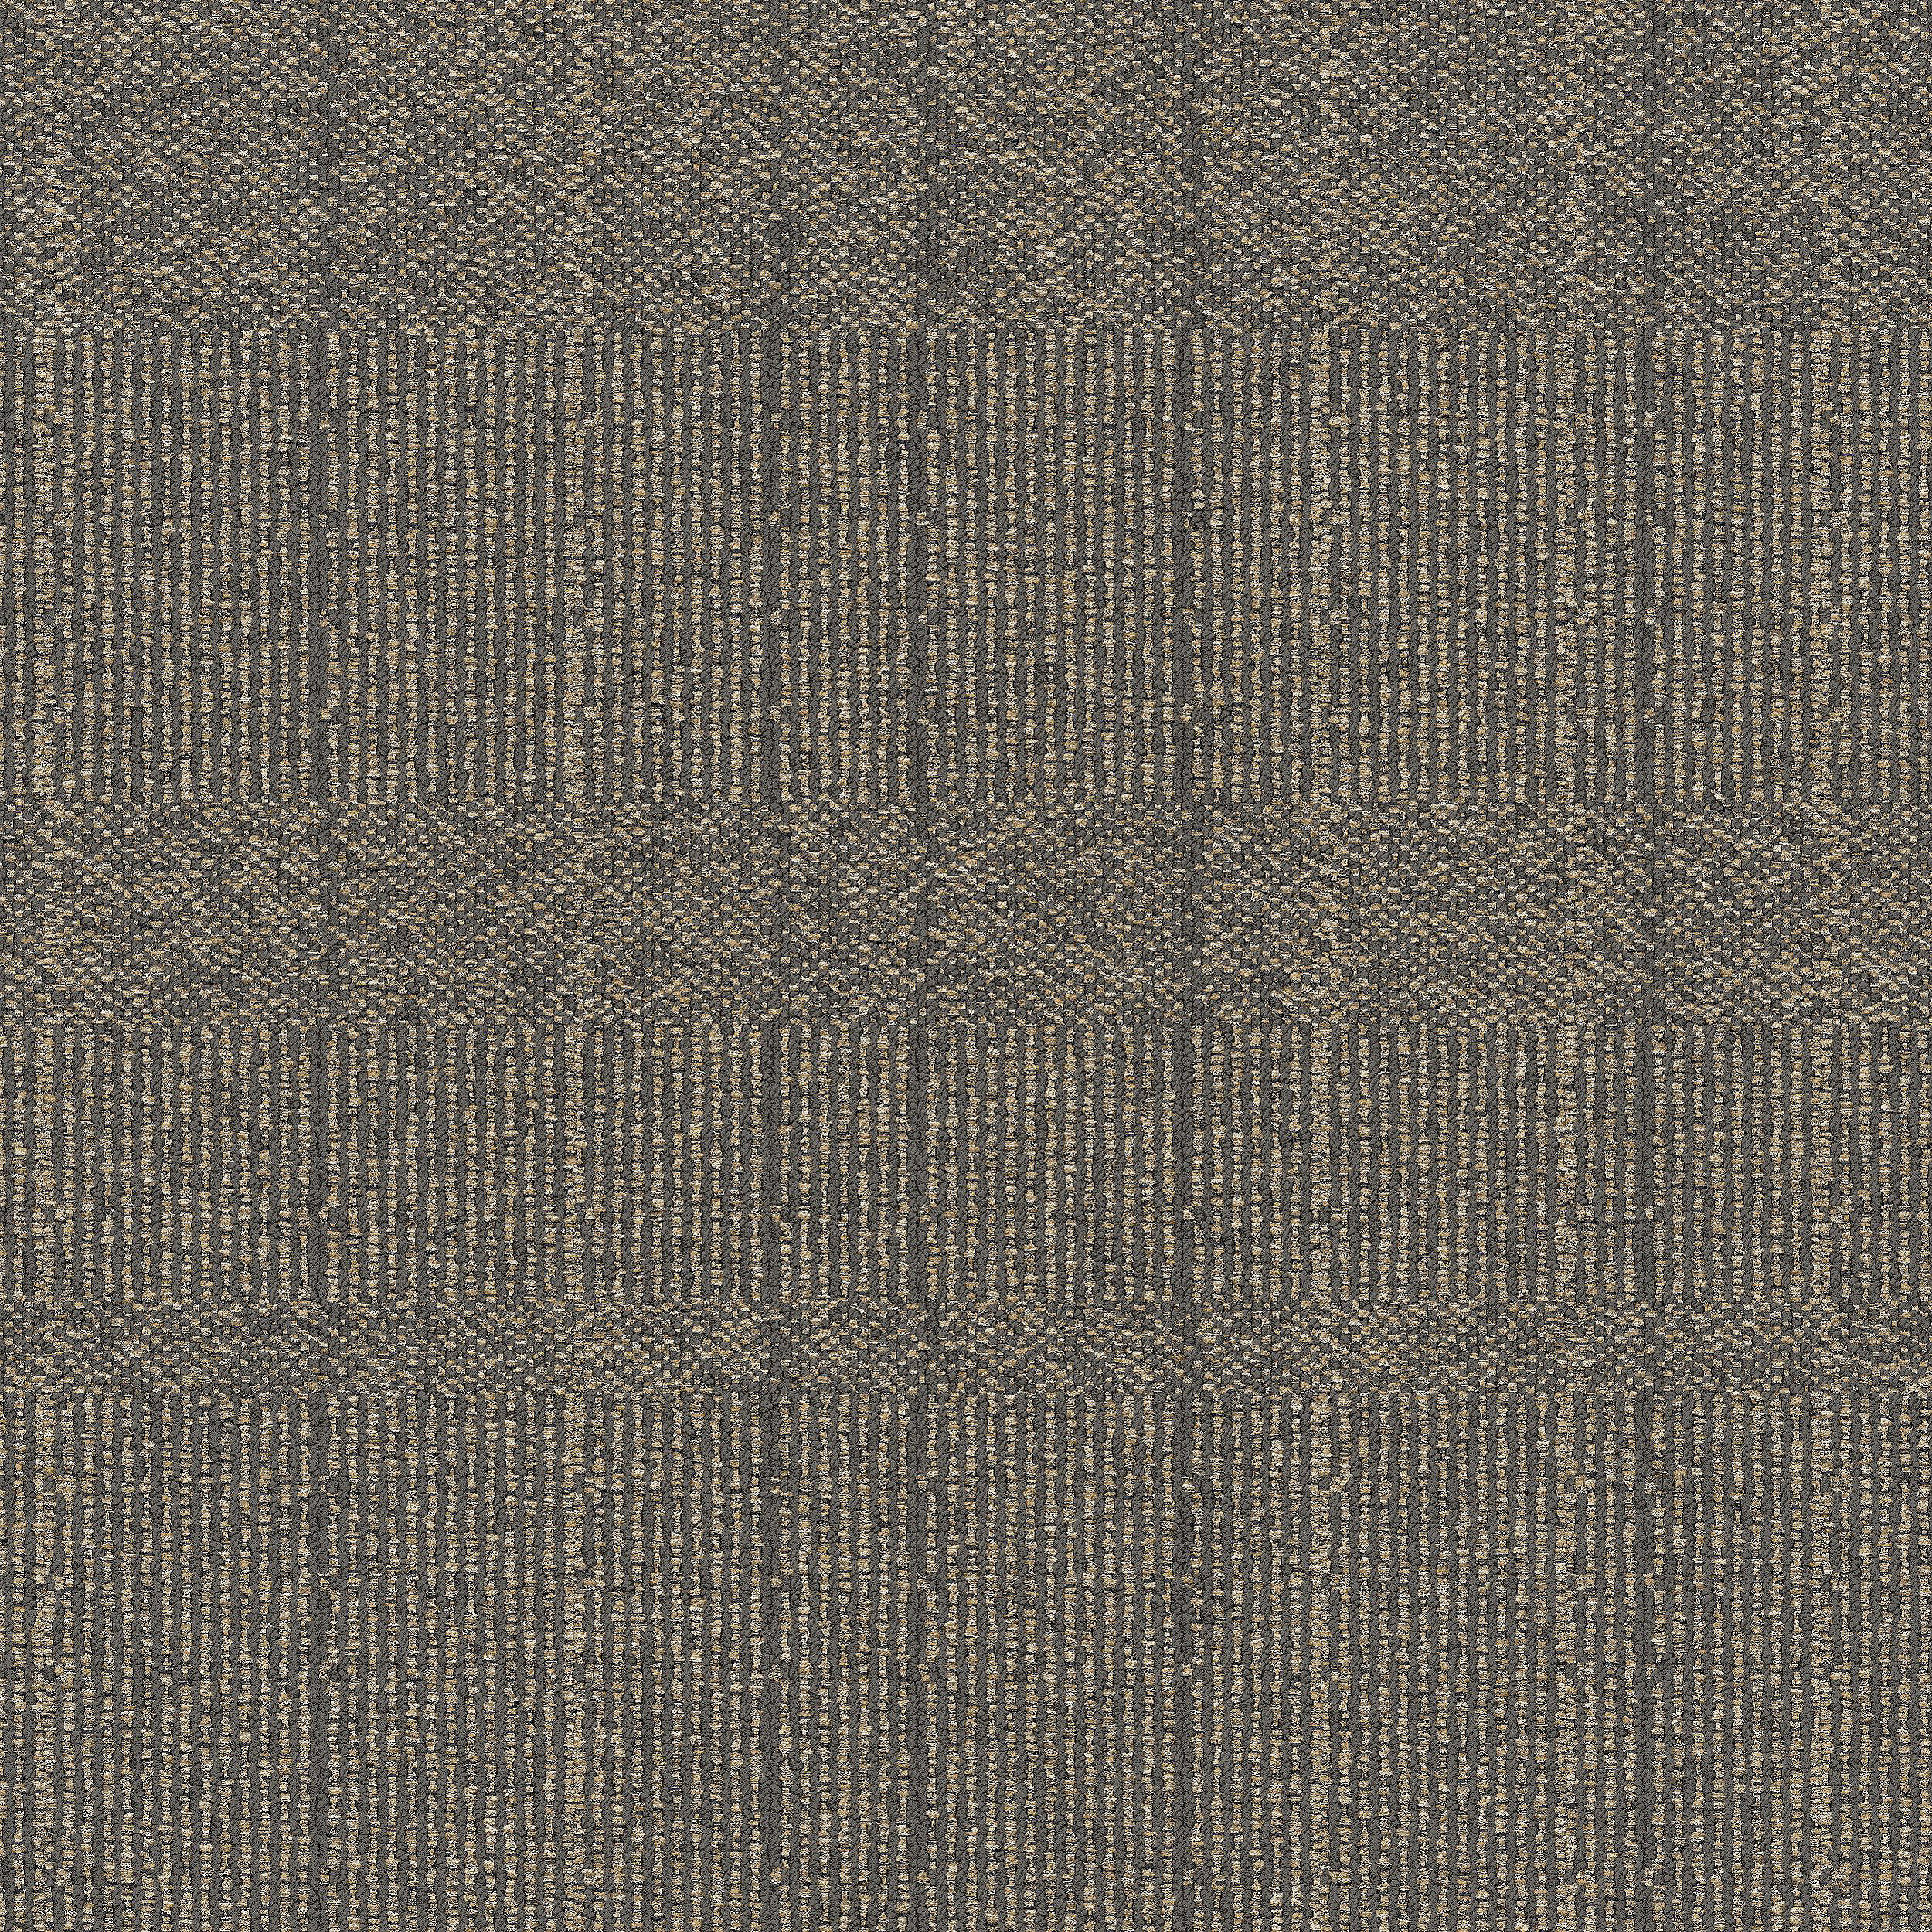 Old Street Carpet Tile In Concrete Grid número de imagen 5